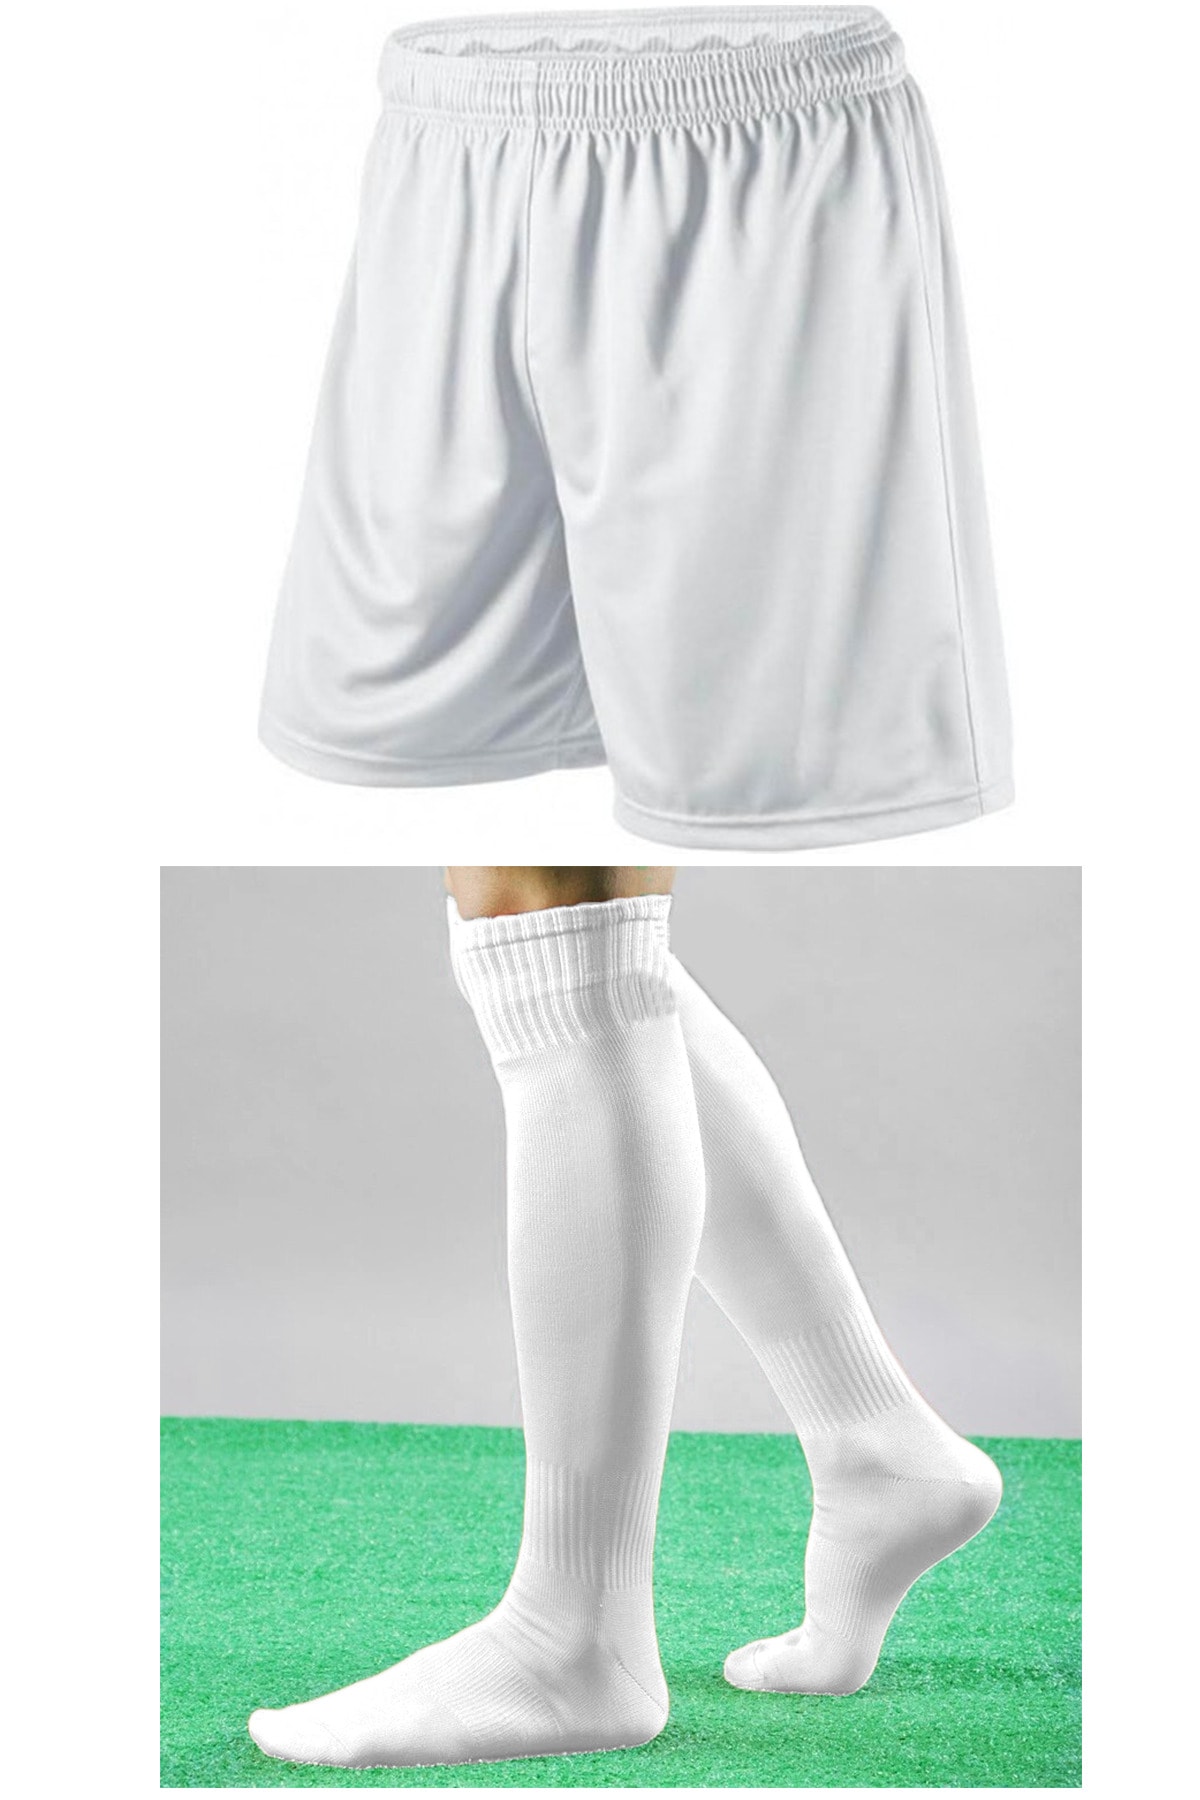 444 marka Futbol Şortu Ve Futbol Çorabı Seti Sporcu Şortu Ve Çorabı Şort Ve Çorap Futbol Şort Çorap Seti